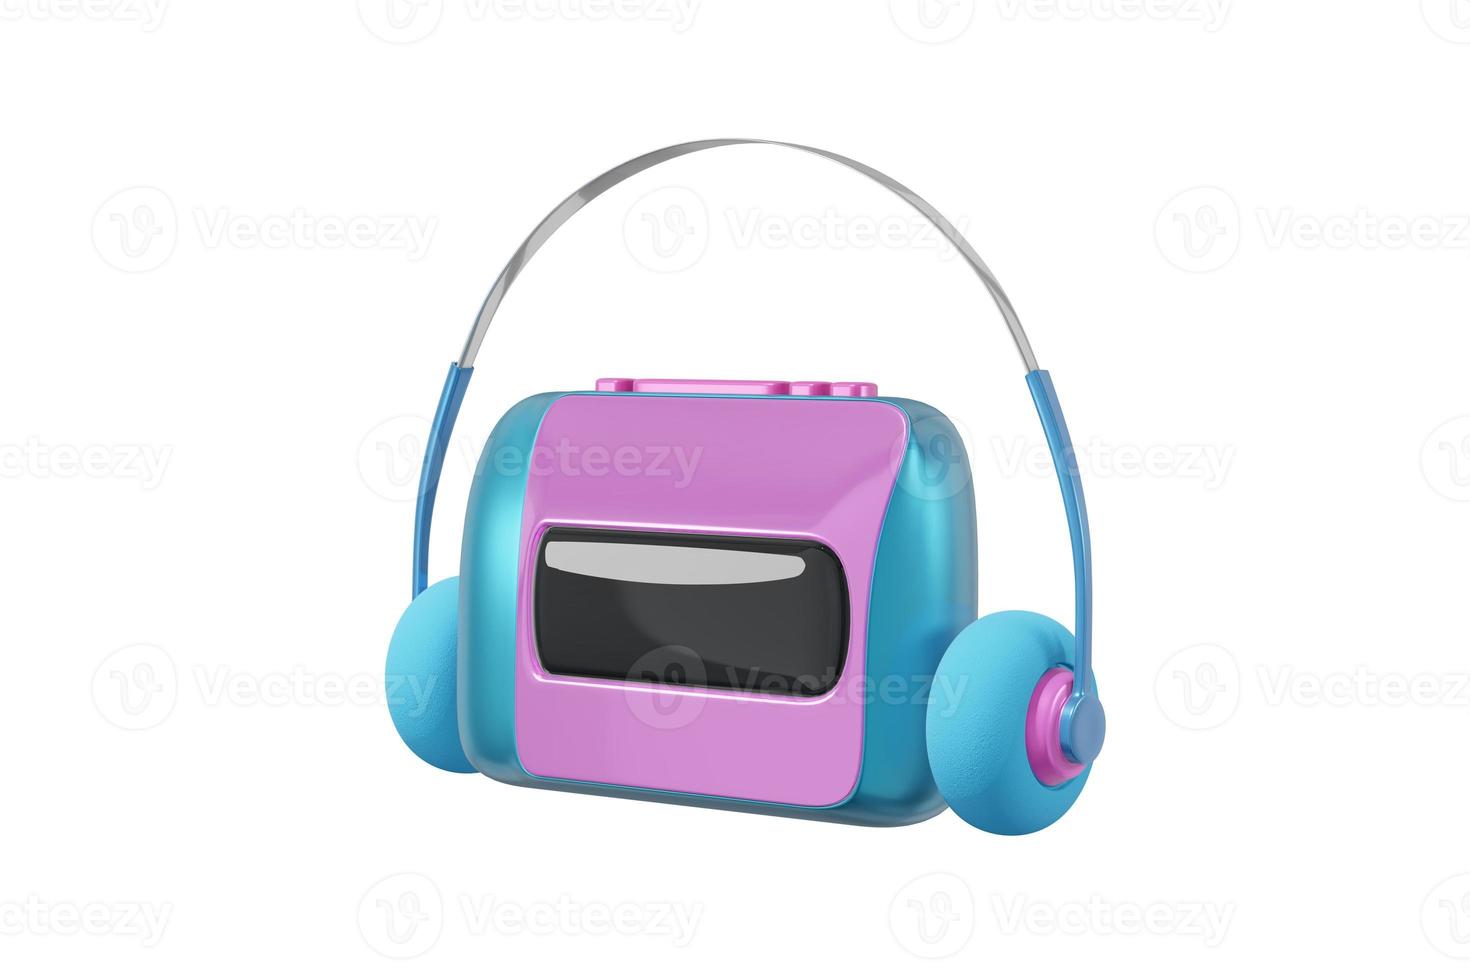 reproductor de audio walkman estilo de dibujos animados aislado fondo blanco. grabadora de cinta de juguete de concepto realista, ilustración rosa azul de auriculares. representación 3d foto